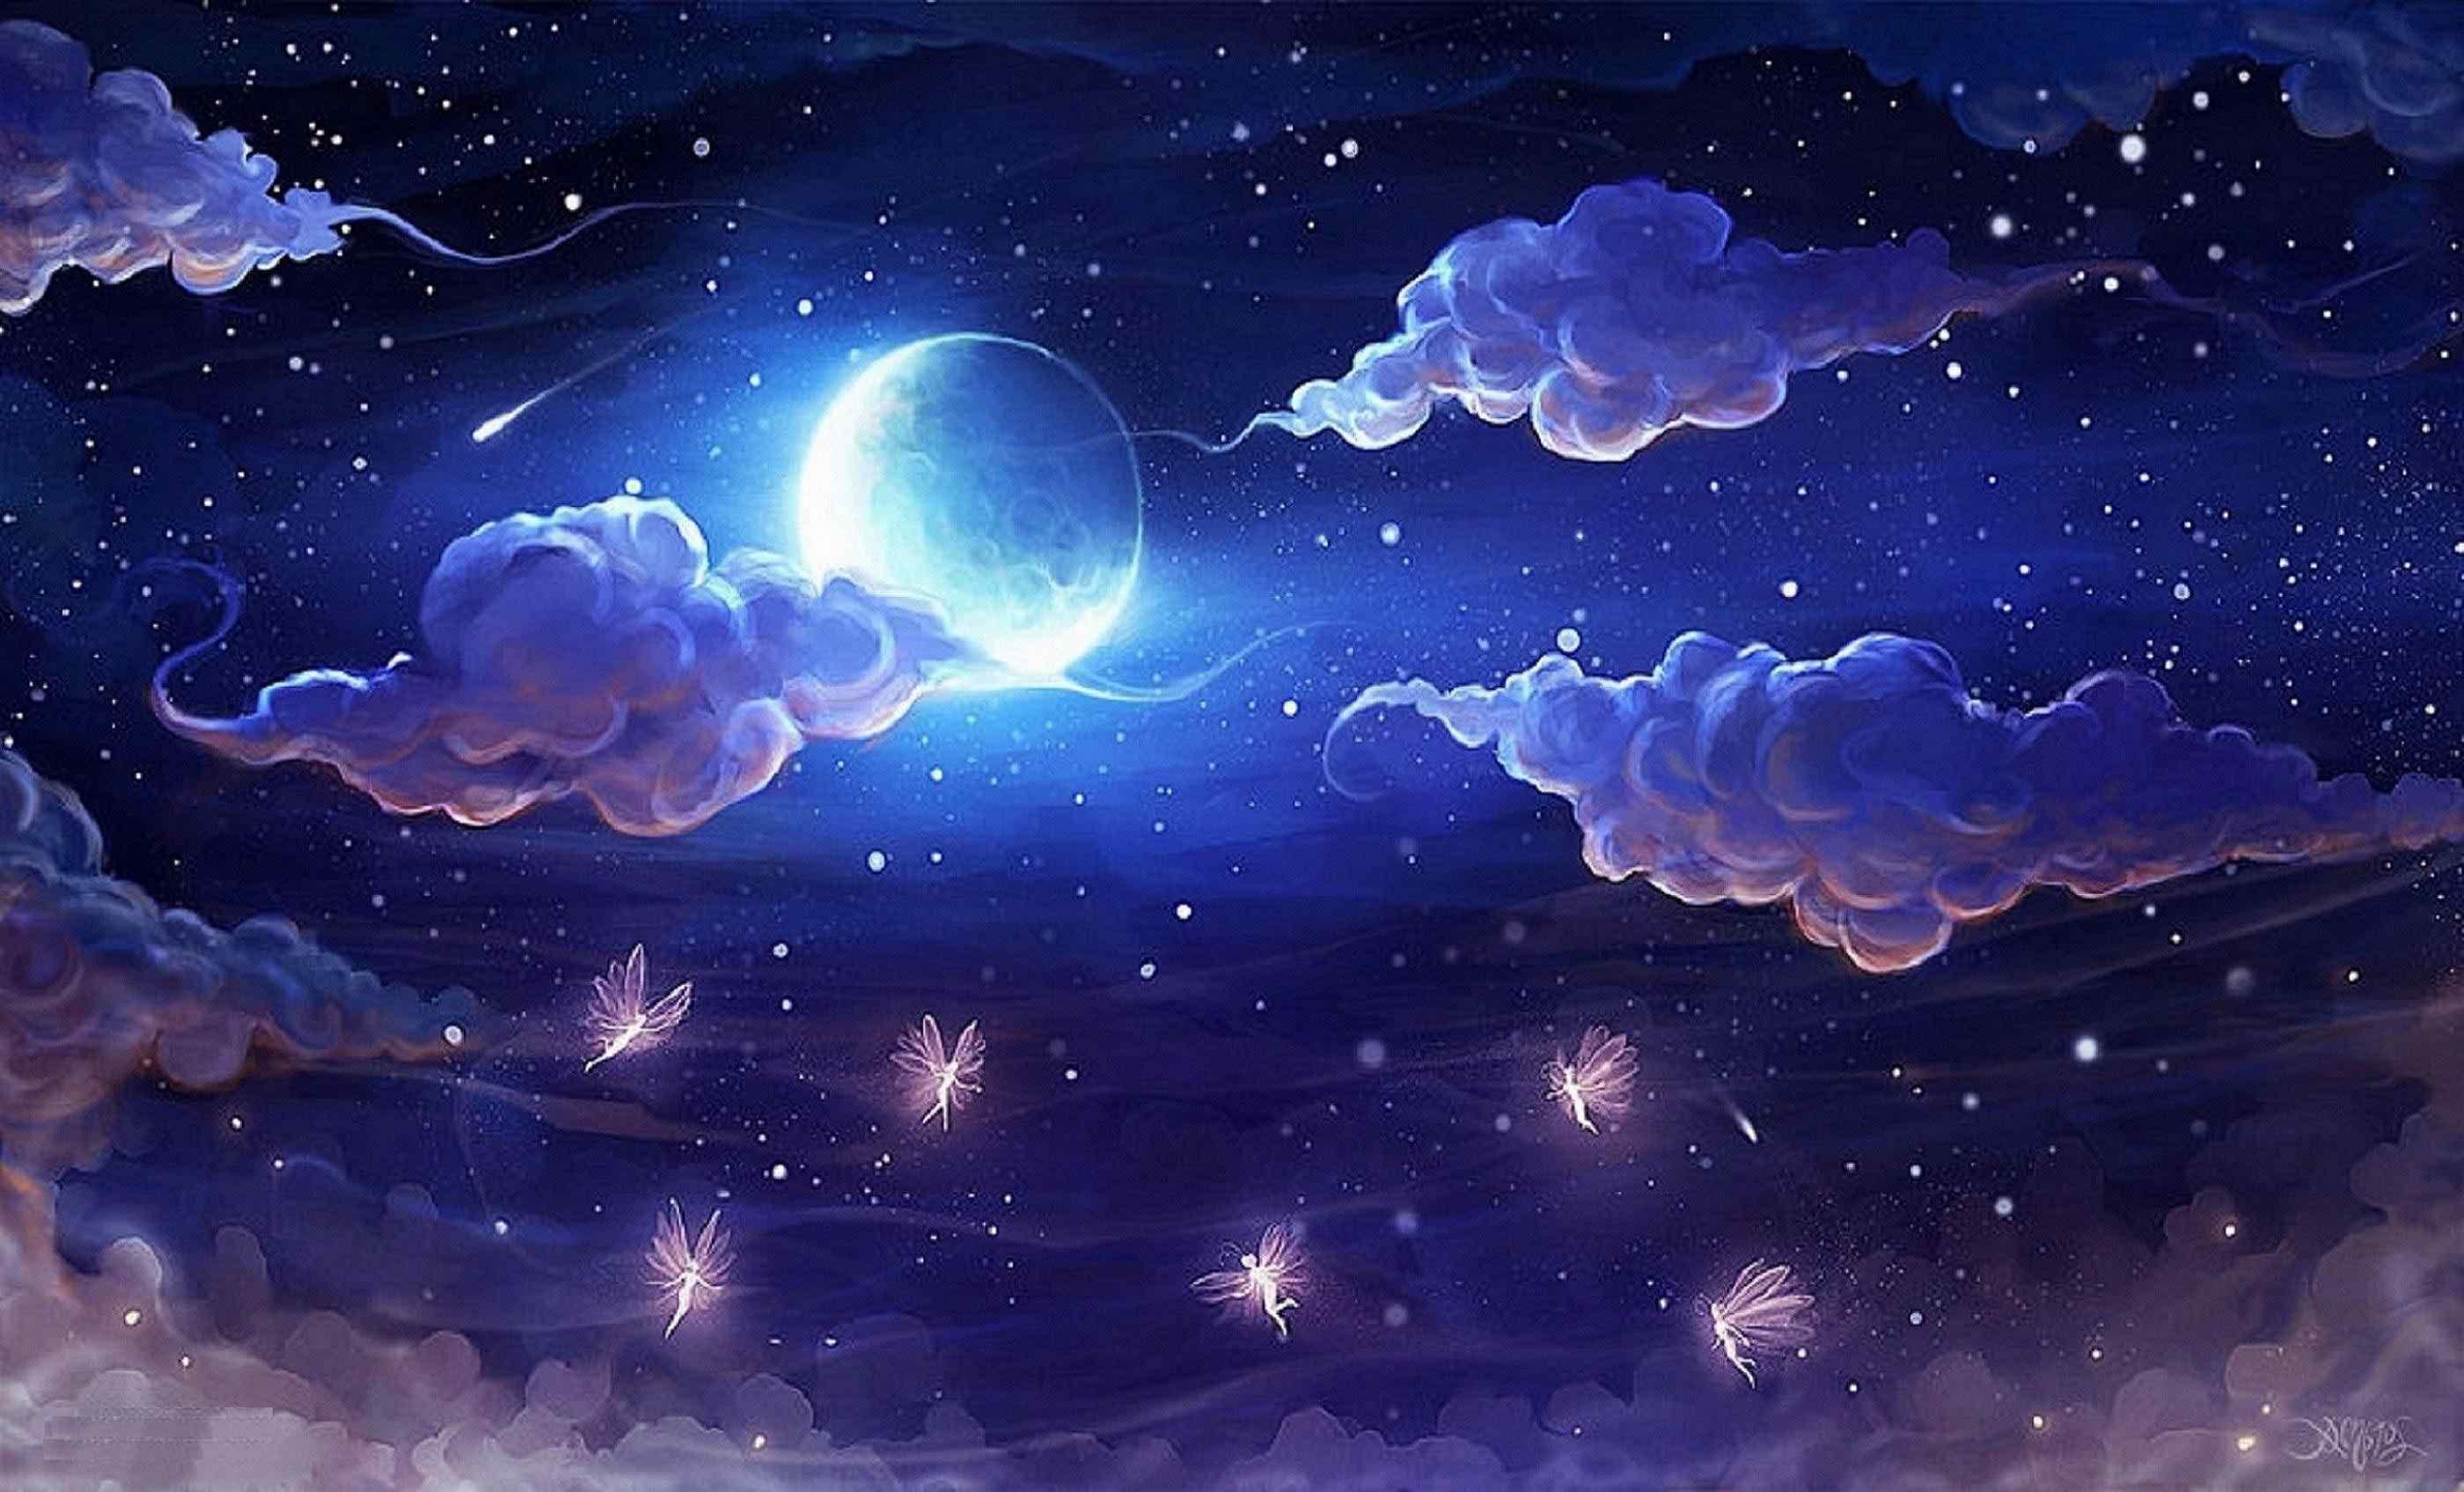 Đặt chân vào không gian thơ mộng với hình nền bầu trời đêm cùng ánh sáng Mặt trăng lung linh. Hình ảnh tỉ mỉ và tinh tế sẽ mang đến trải nghiệm mới lạ cho người sử dụng.